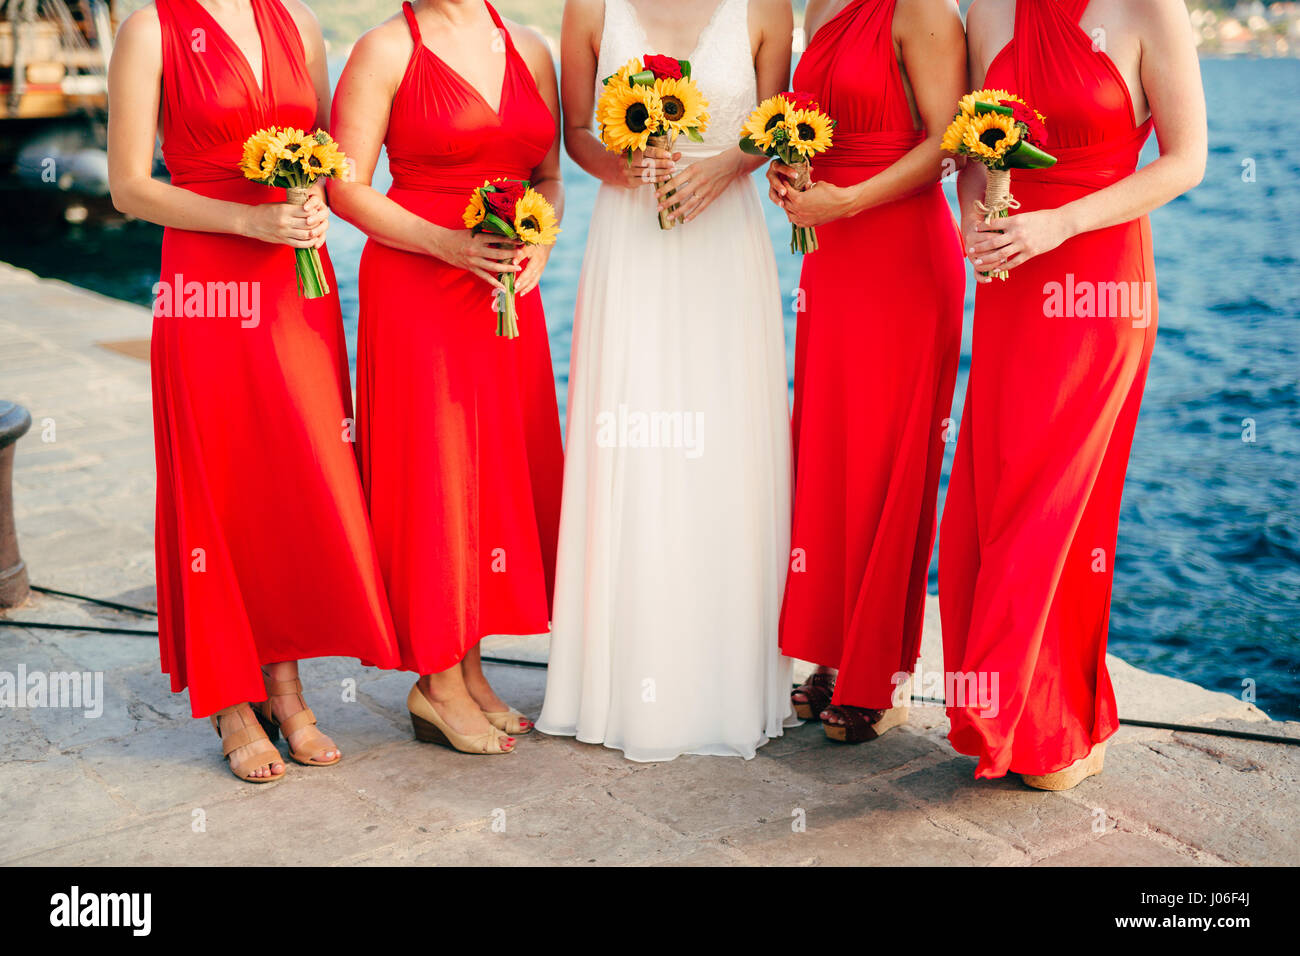 Damigelle in abiti rossi, nelle mani di mazzi di fiori di girasole.  Sposarsi sul mare in Montenegro Foto stock - Alamy